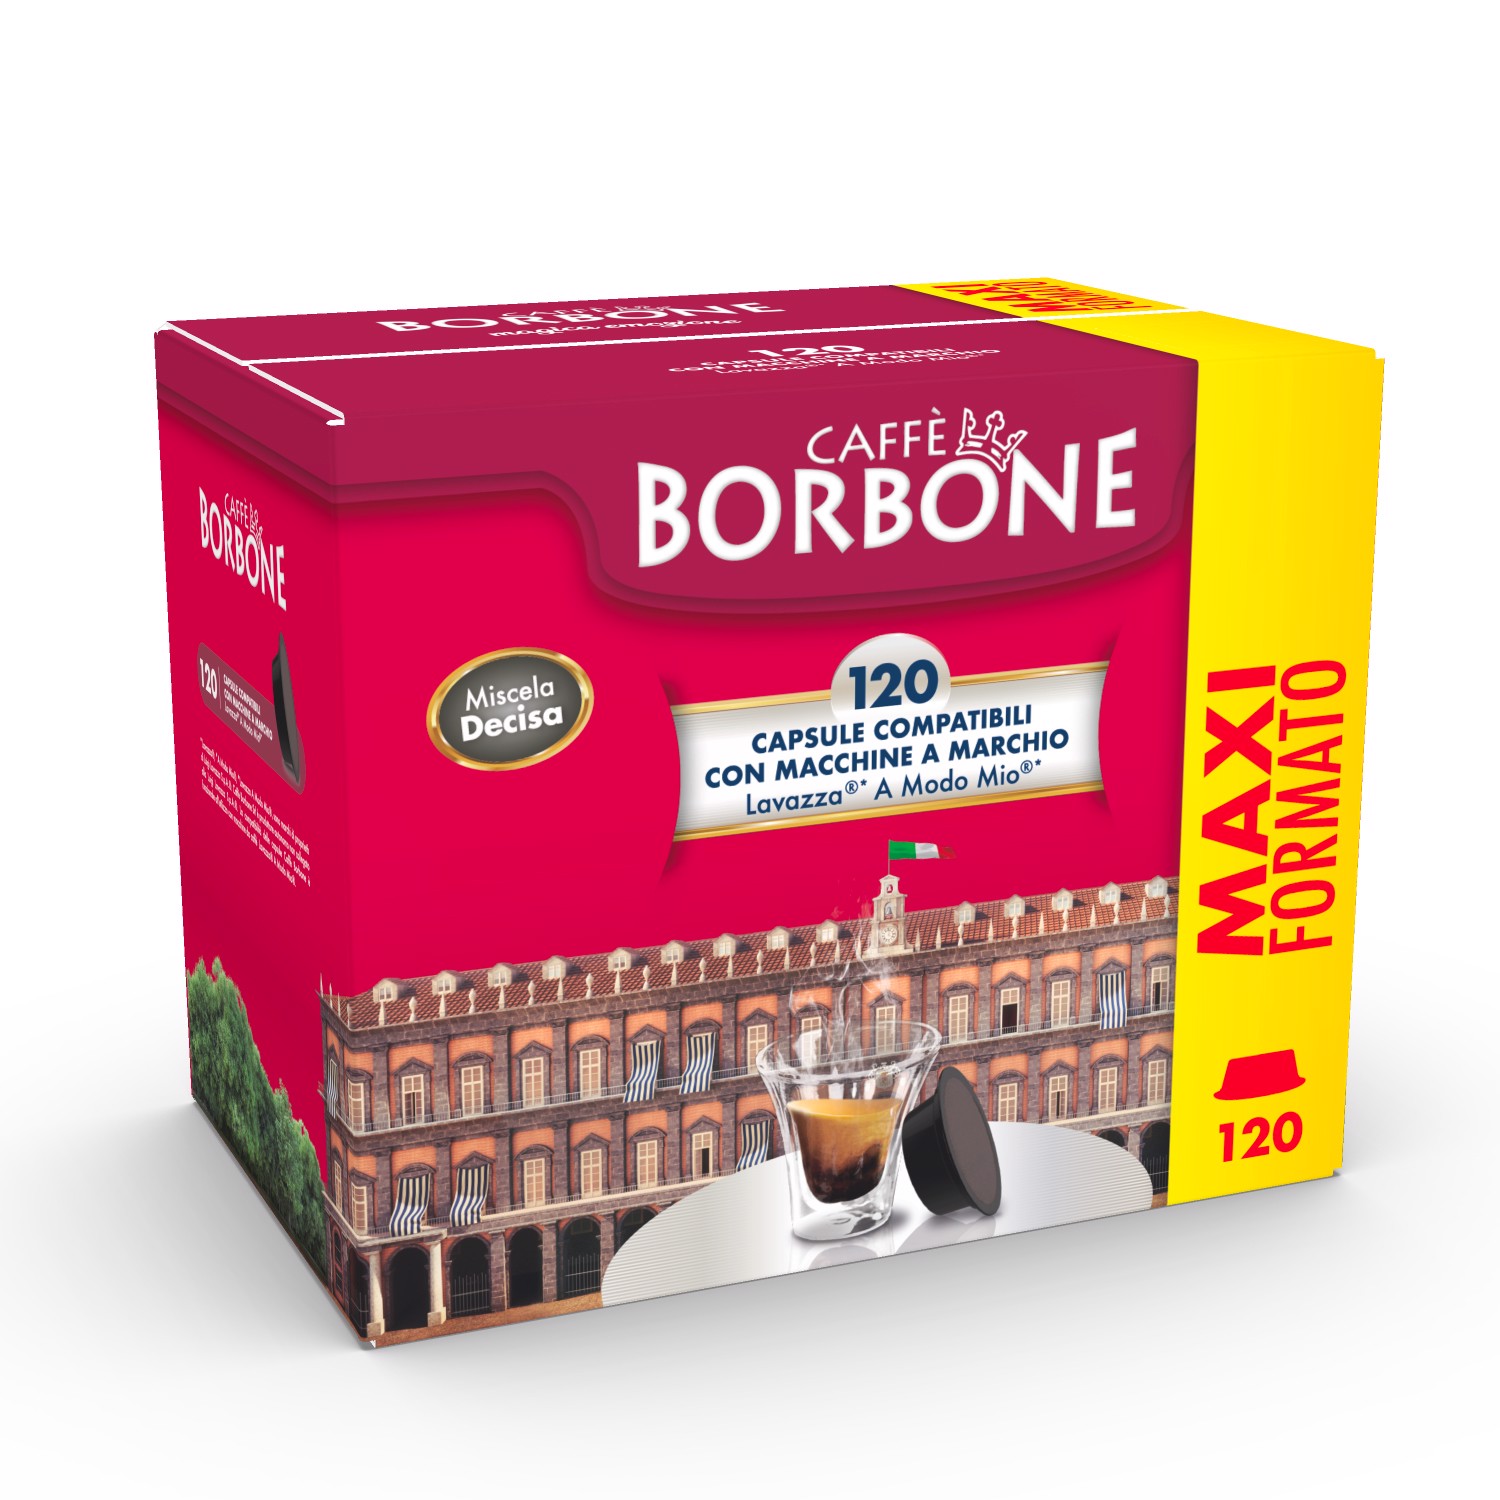 Caffè Borbone - Capsule compatibili Dolce Gusto, miscela Red